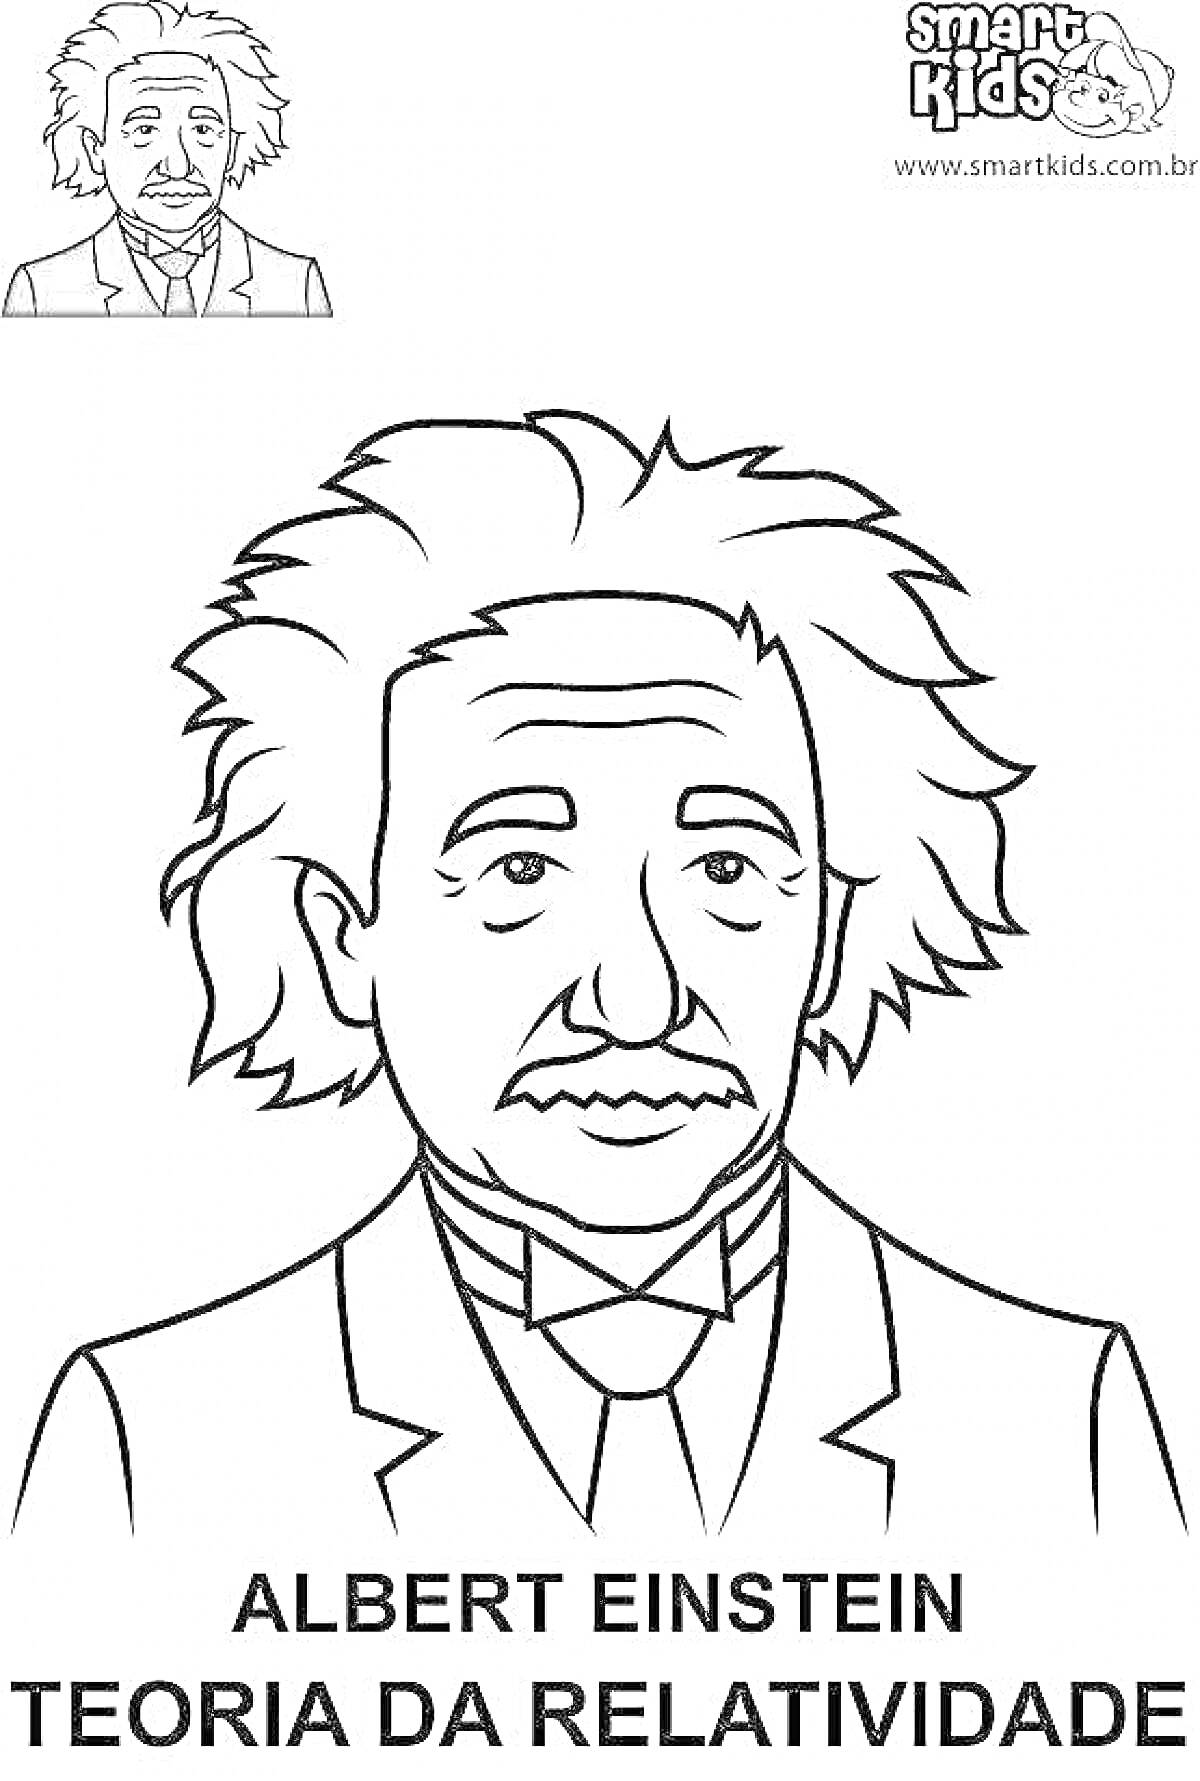 Портрет Альберта Эйнштейна с подписью 